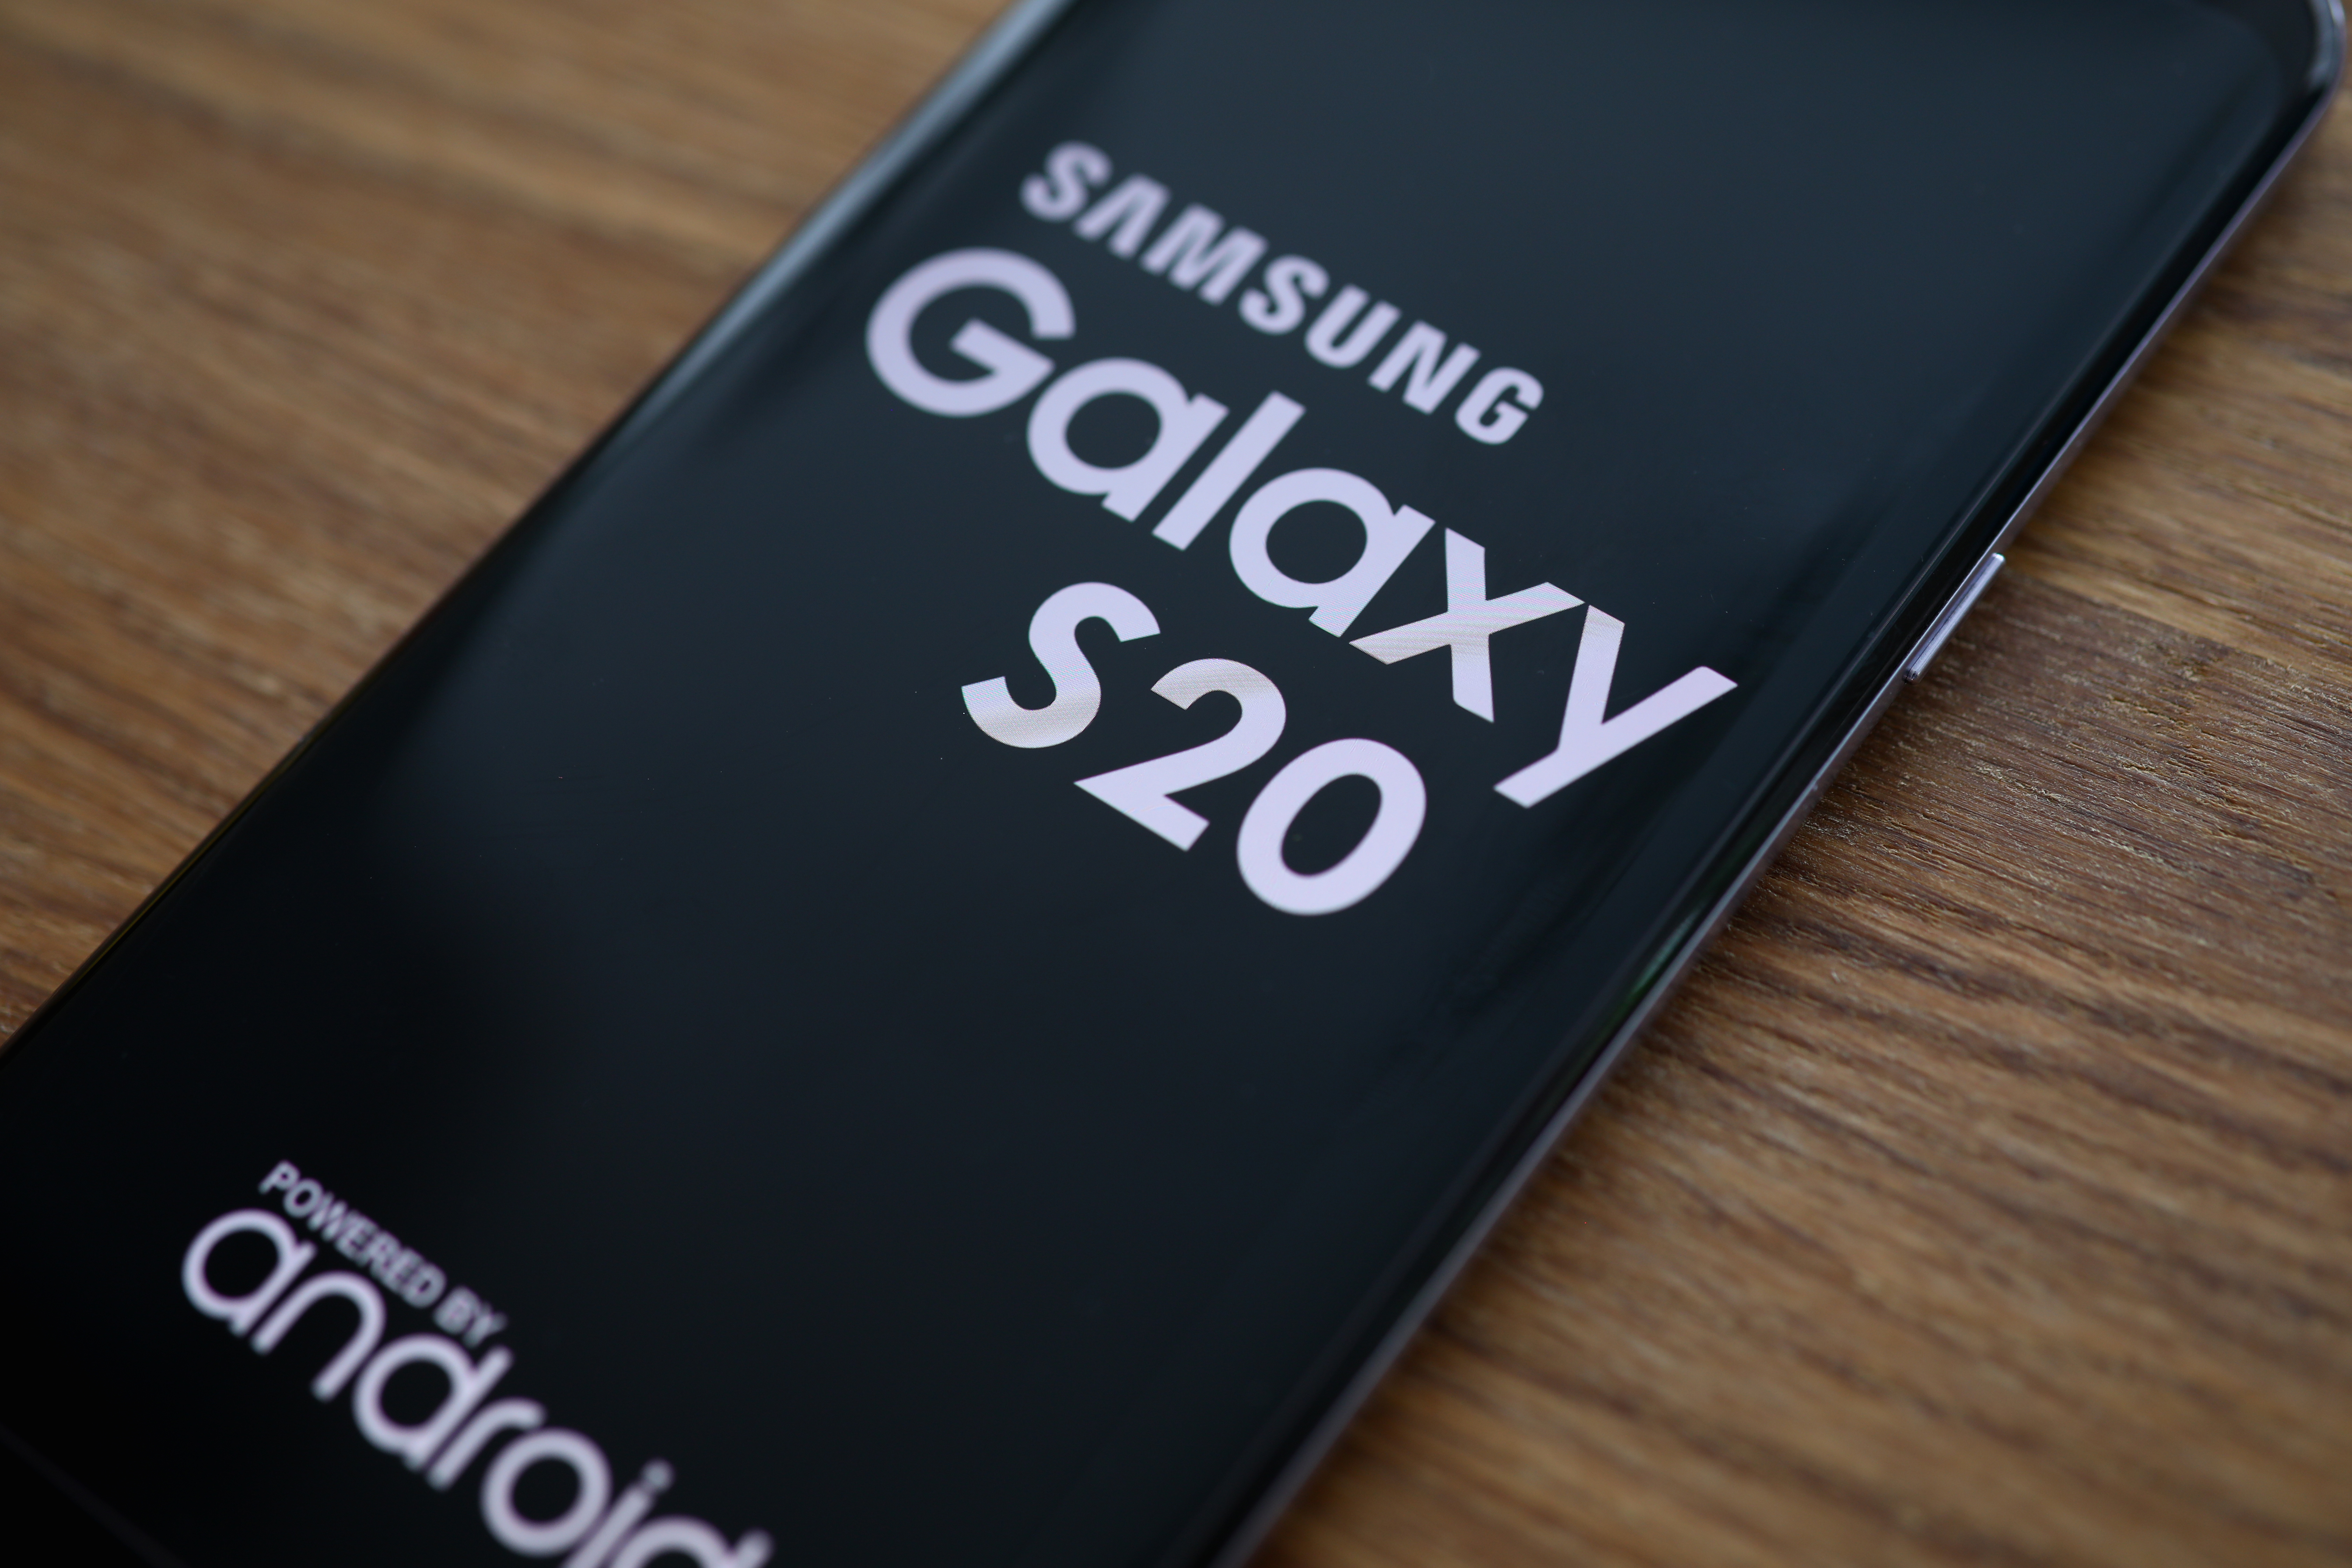 Le smartphone Samsung Galaxy S20+ à son prix le plus bas © H_Ko, Adobe Stock